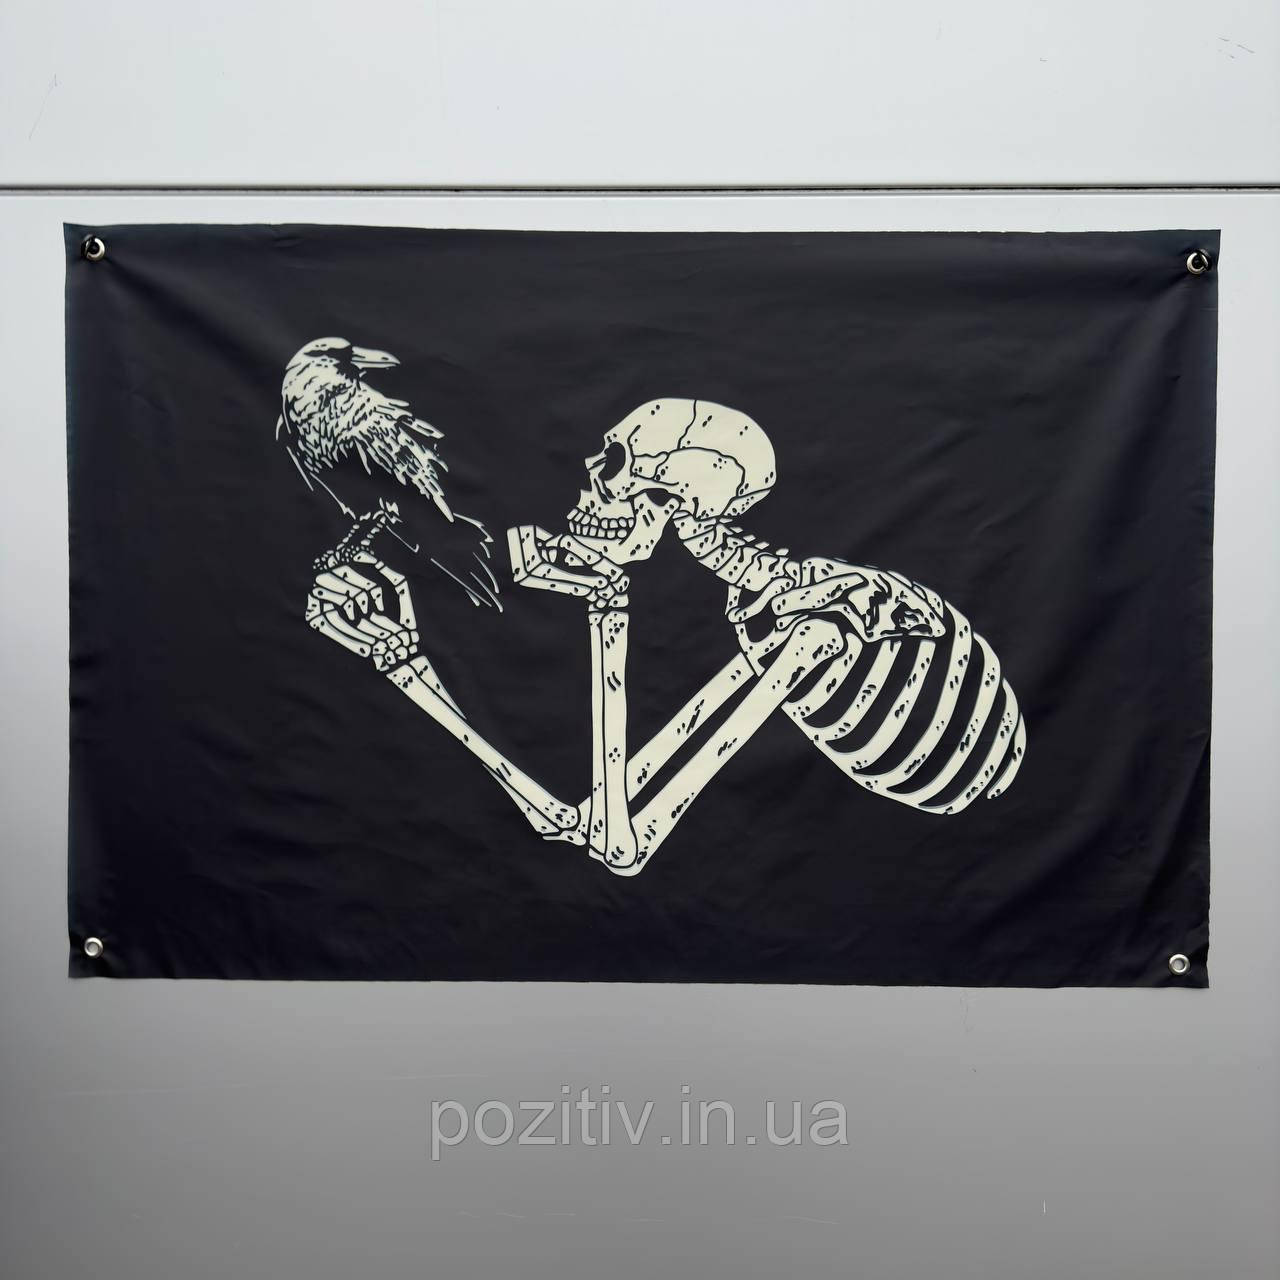 Баннер на стіну у квартирі скелет із вороном